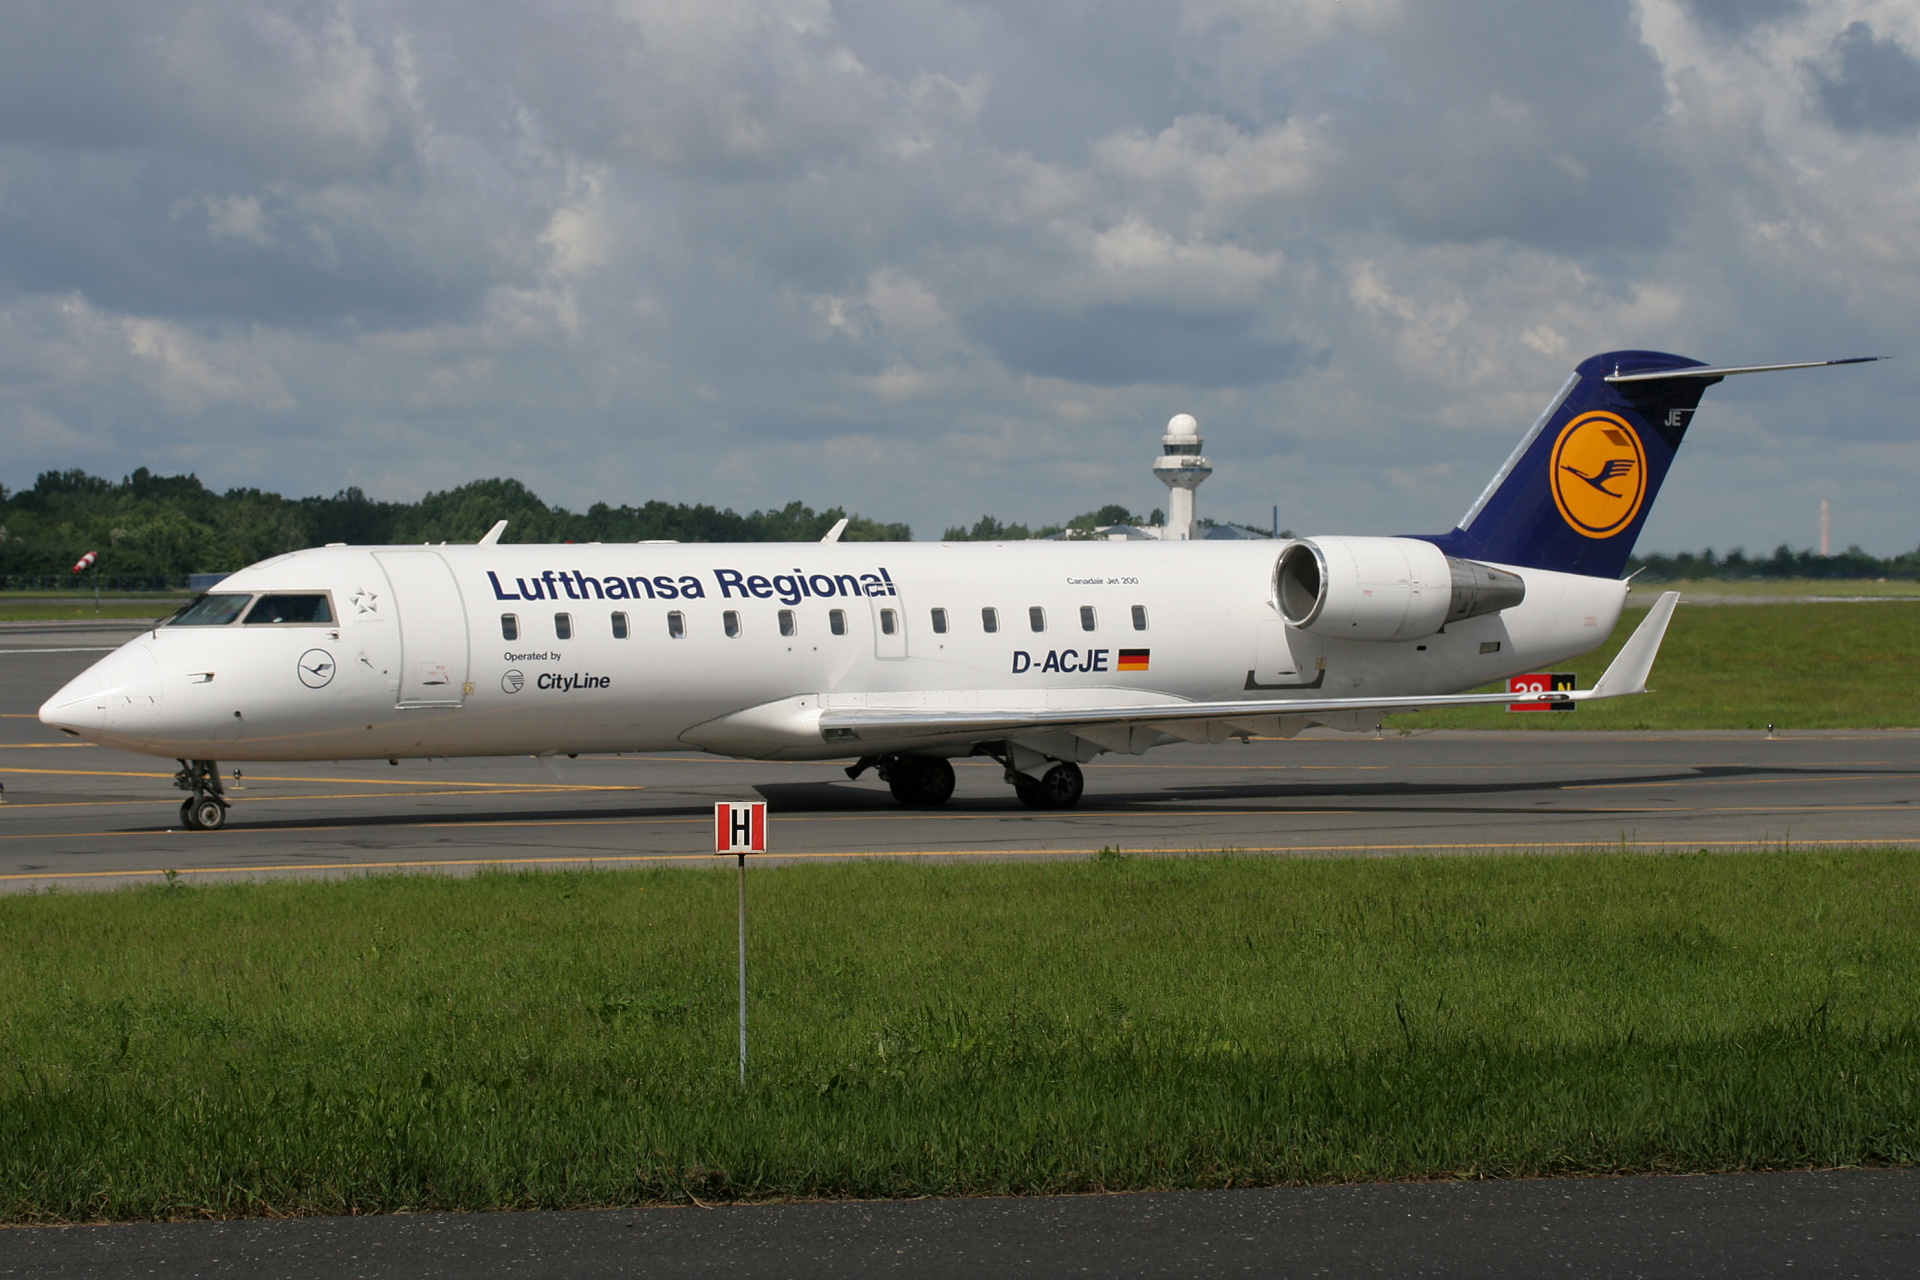 D-ACJE (CityLine) (Aircraft » EPWA Spotting » Bombardier CL-600 Regional Jet » CRJ-200 » Lufthansa Regional)